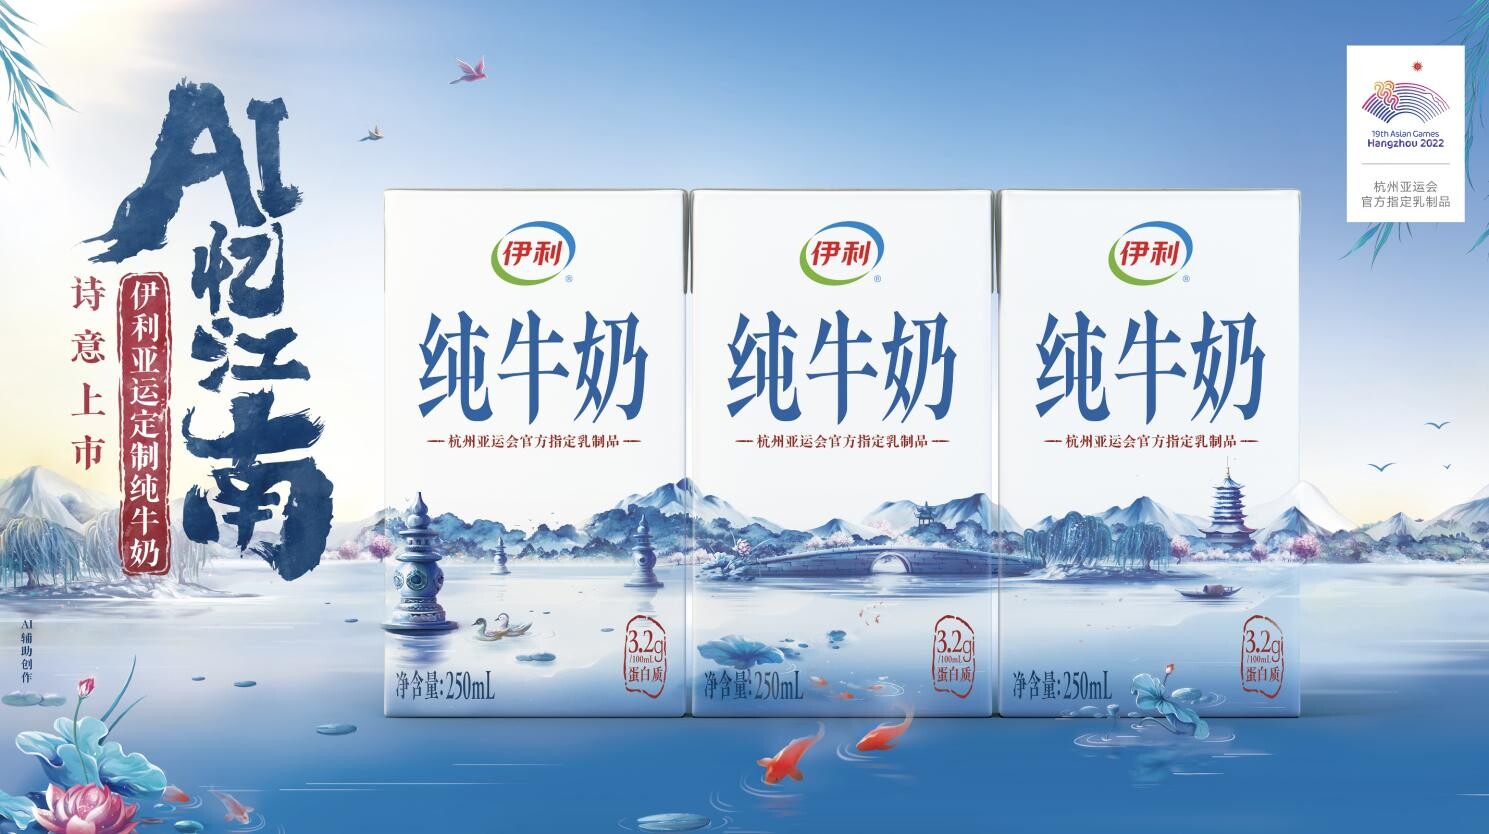 Yili ได้รับการแต่งตั้งเป็นผู้จัดหาผลิตภัณฑ์นมอย่างเป็นทางการแต่เพียงผู้เดียวของมหกรรมกีฬาเอเชียนเกมส์ หางโจว พร้อมเปิดตัวผลิตภัณฑ์ใหม่ในธีมเจียงหนาน